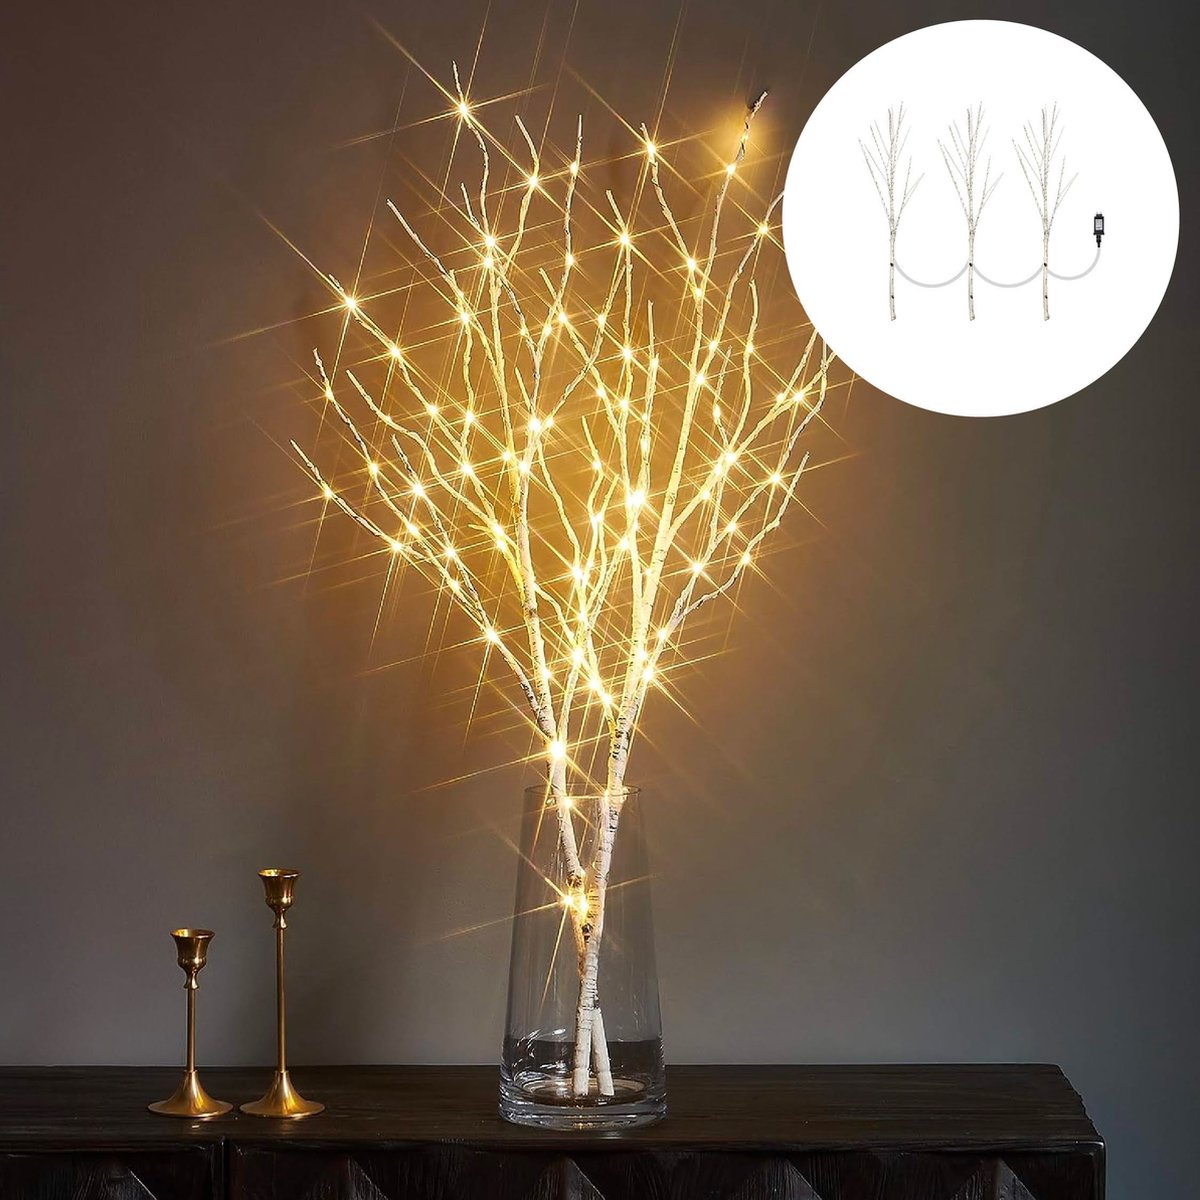 Lot de 5 Branches Lumineuses à 20 LED Lampe Décoration pour Fête Noël (  Blanc chaud )